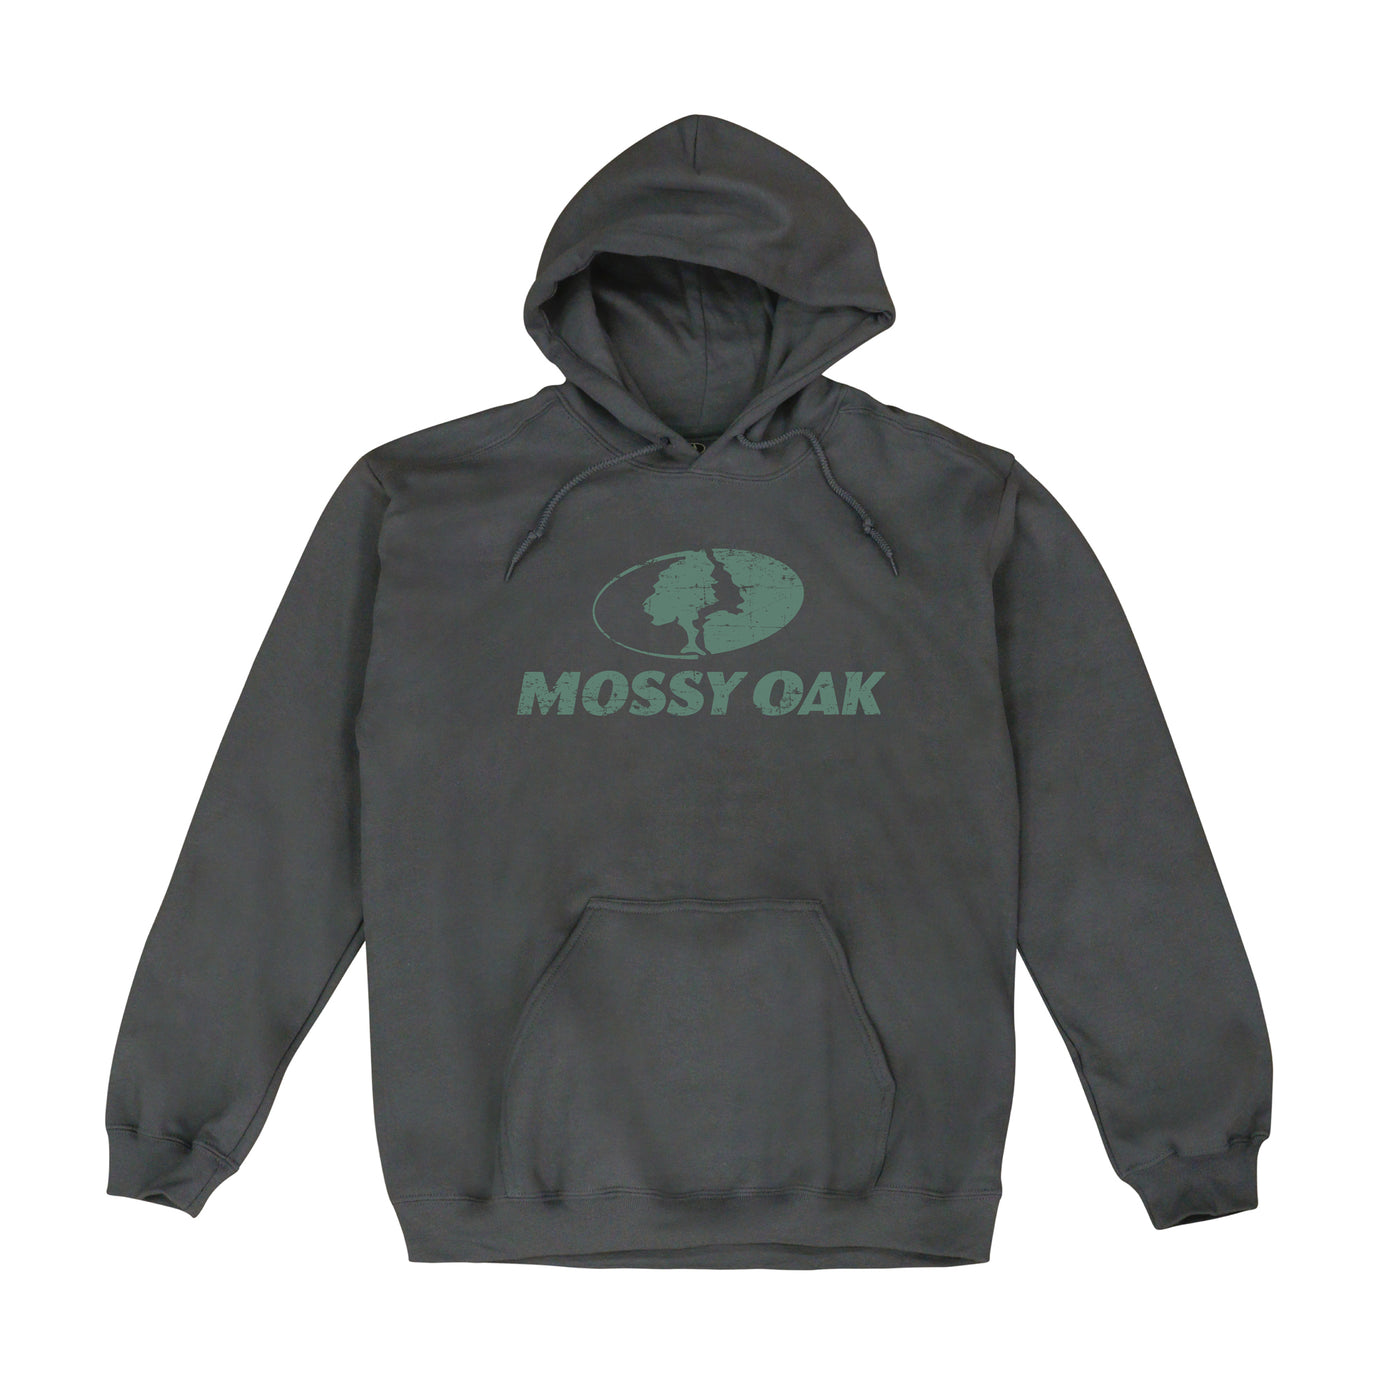 Mossy Oak Brand Hoodie Charcoal Green